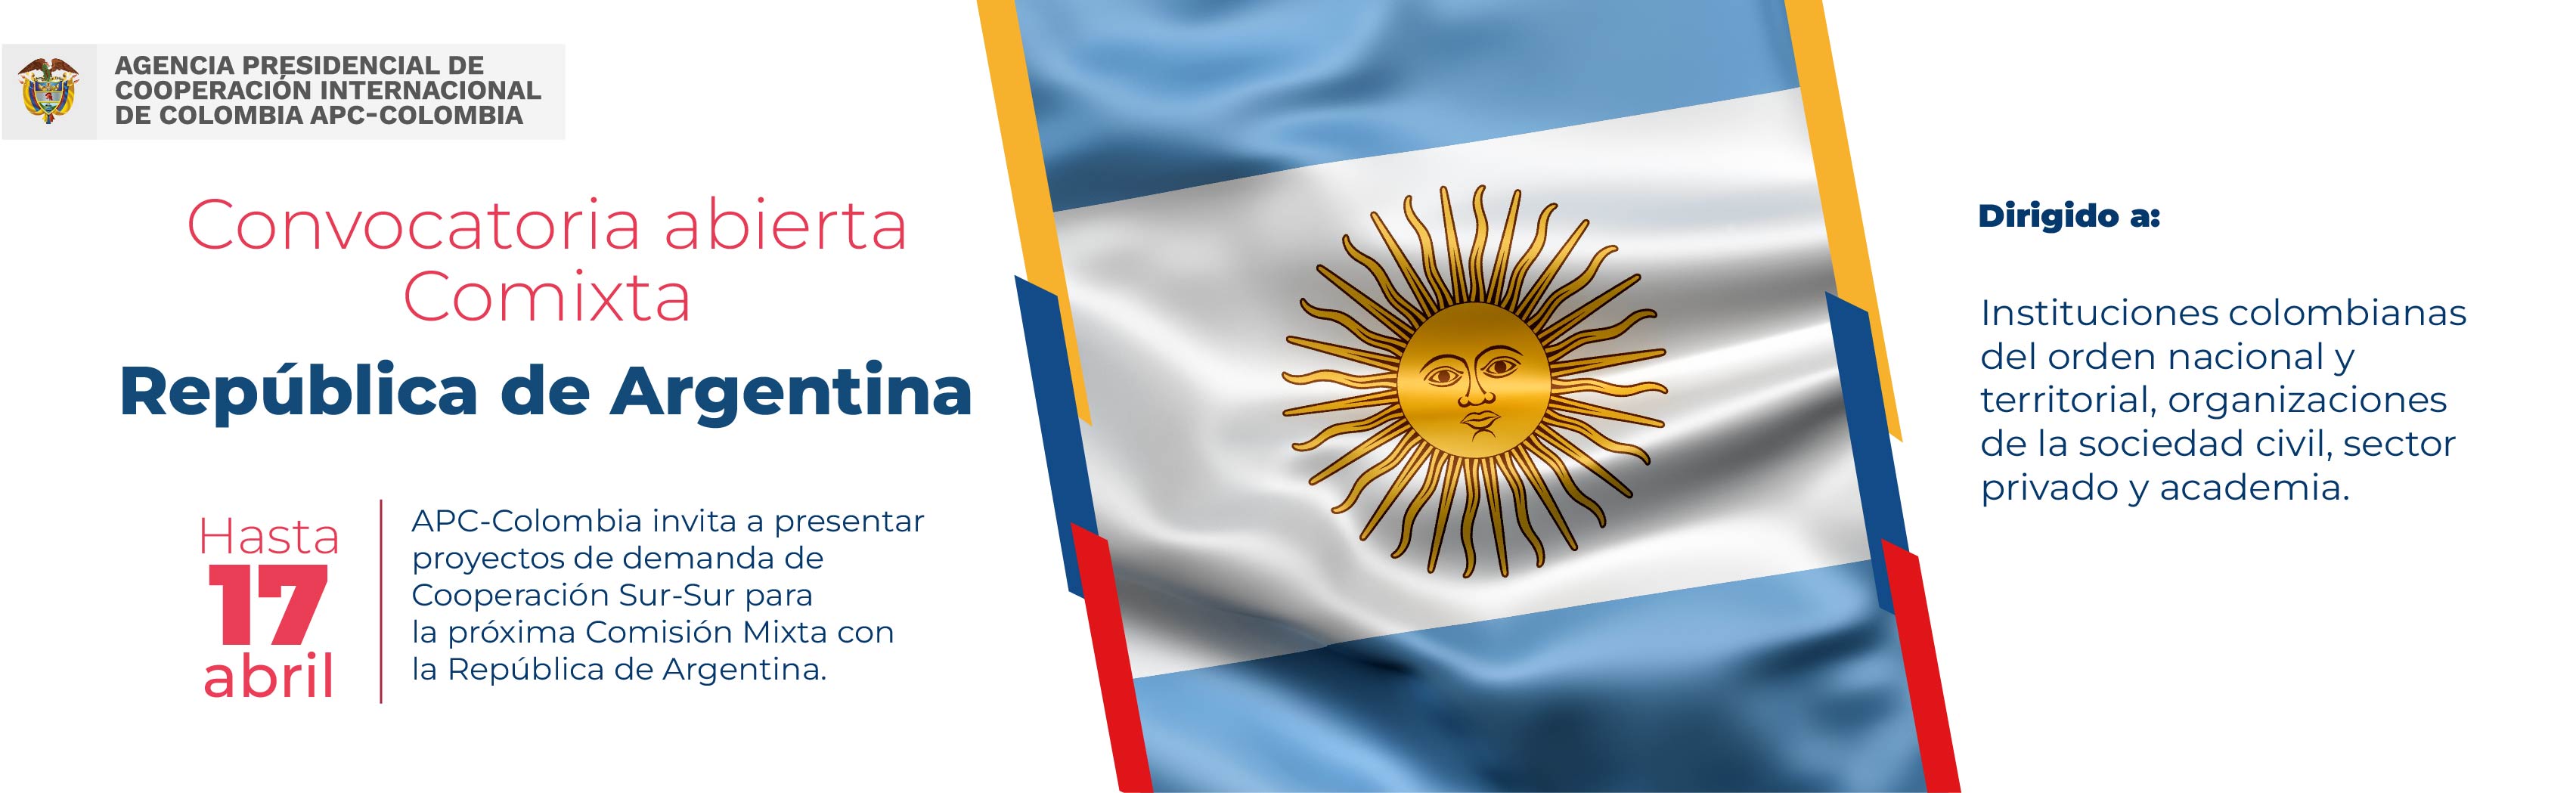 Comixta entre Colombia y argentina, en el medio la bandera de Argentina hasta el 17 de abril